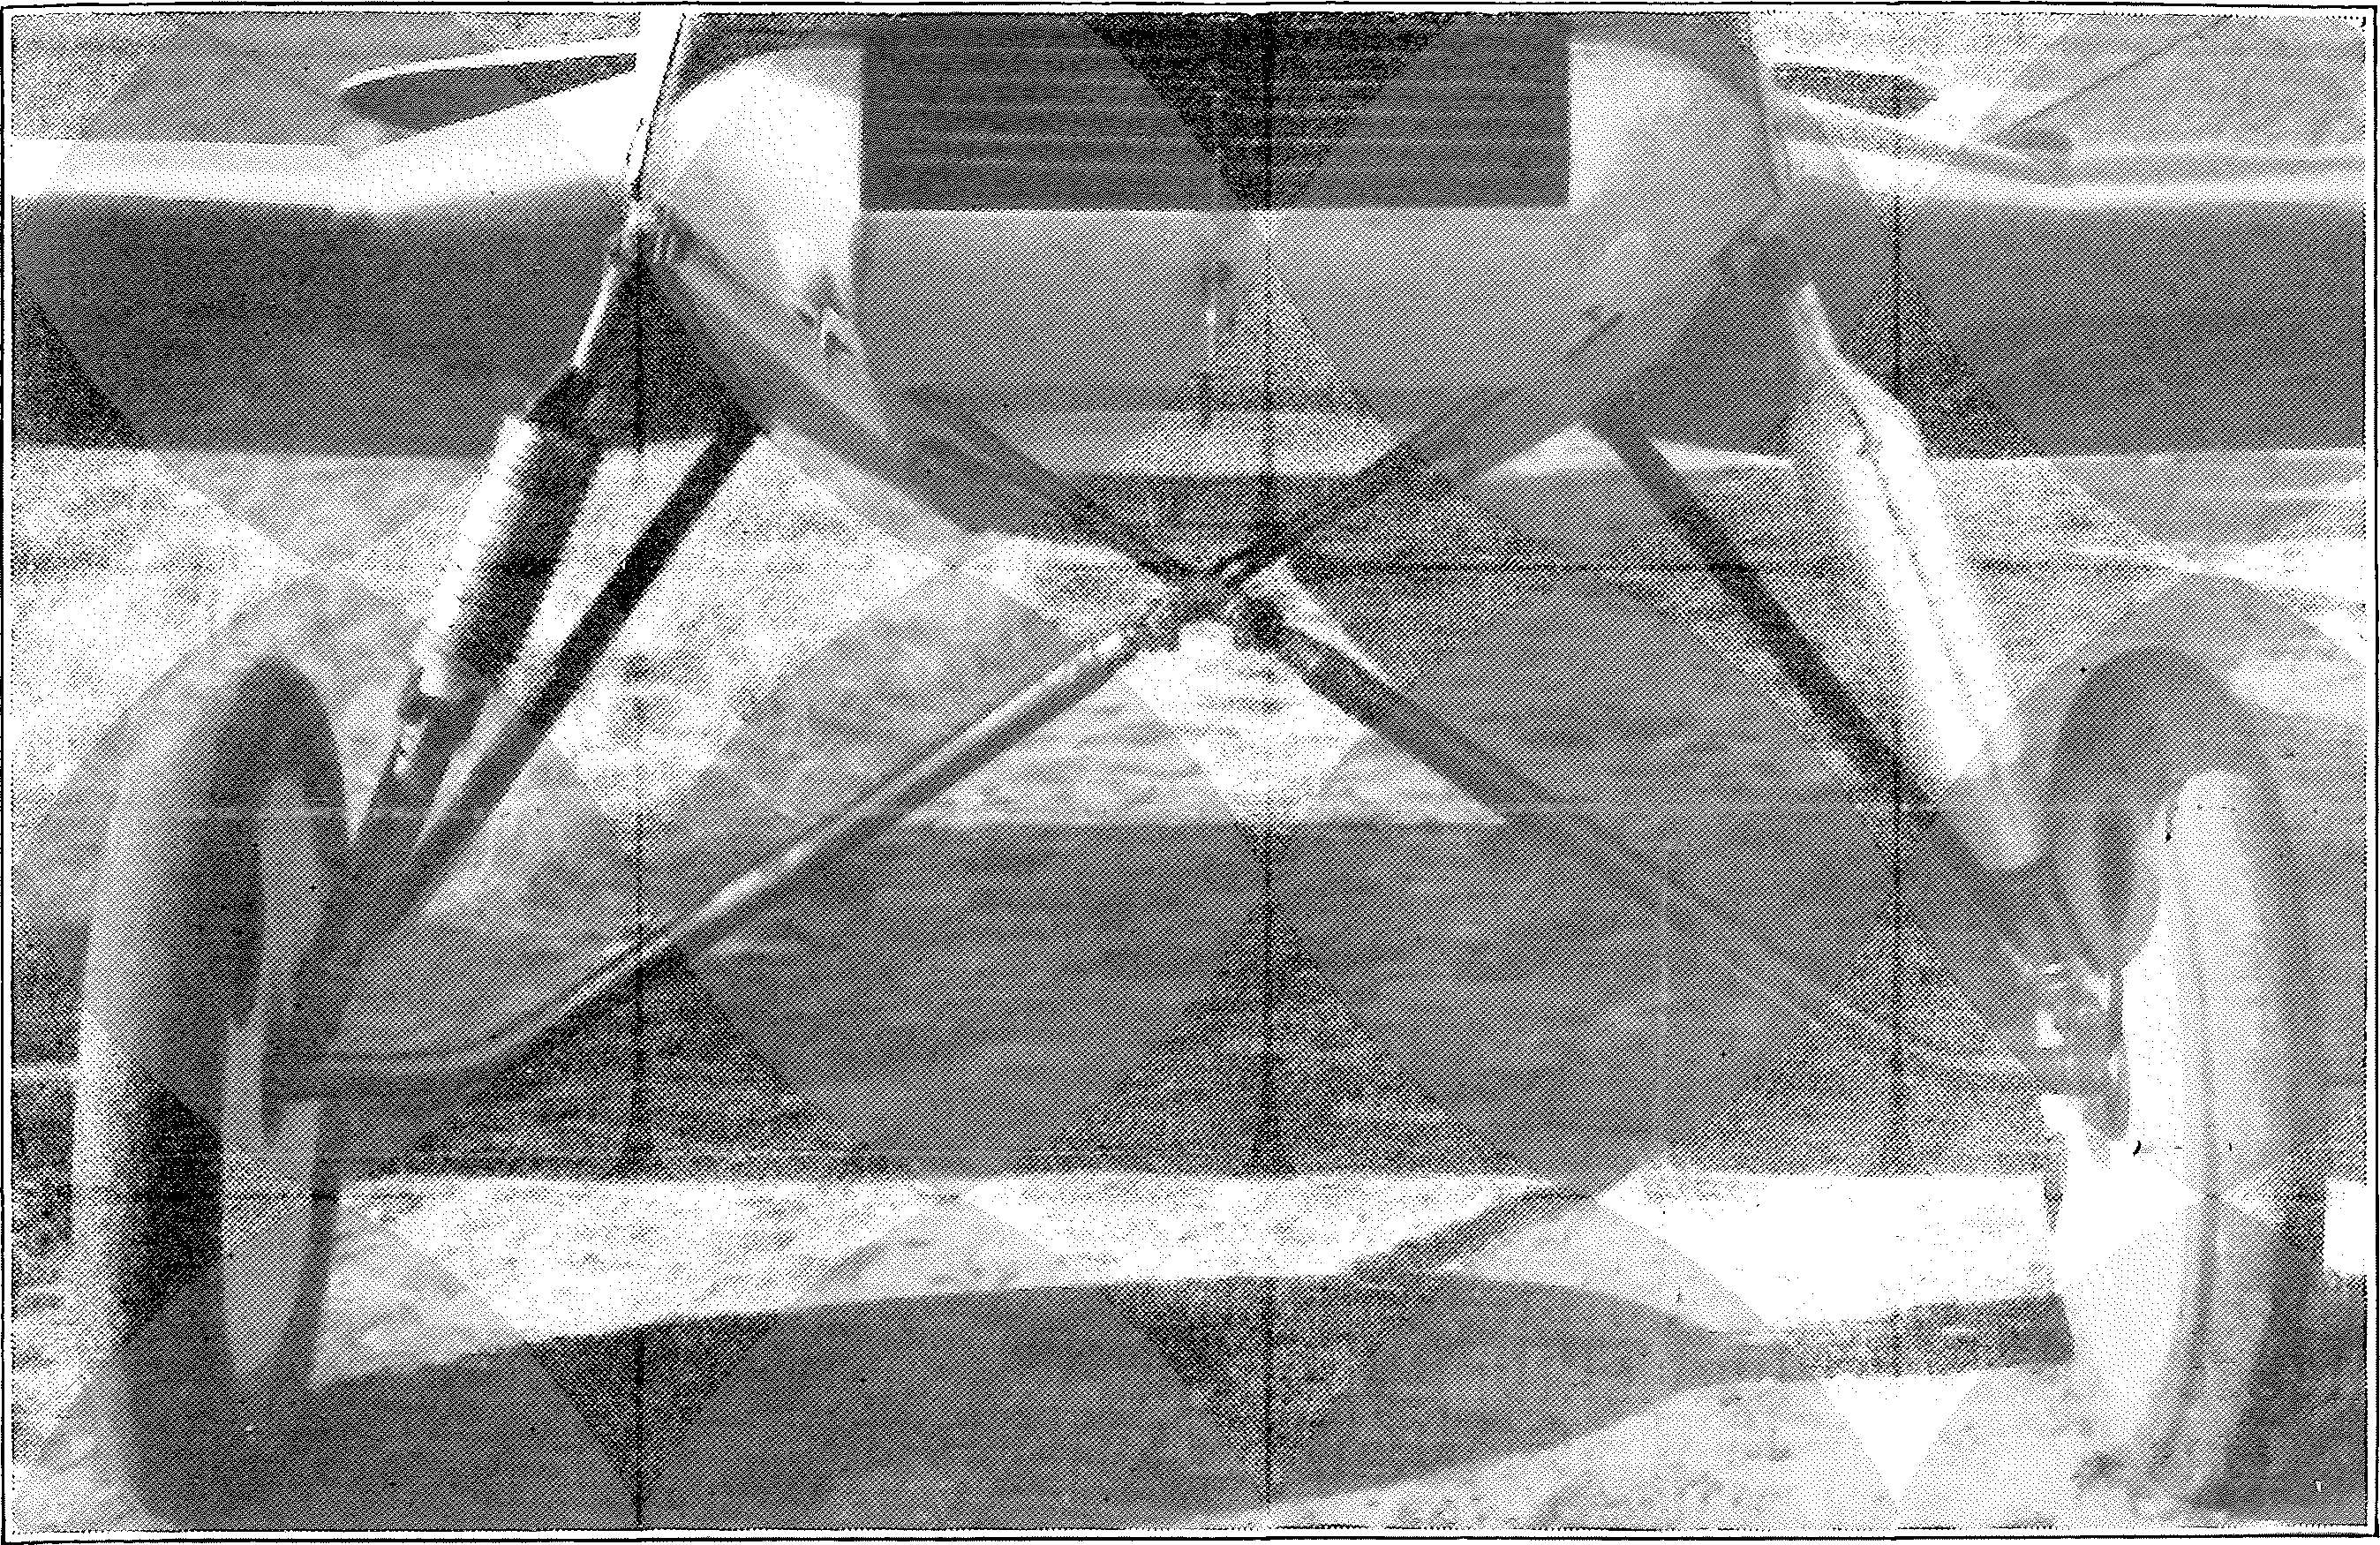 Segelflug, Motorflug und Modellflug sowie Luftfahrt und Luftverkehr im Deutschen Reich (Weimarer Republik) im Jahre 1928